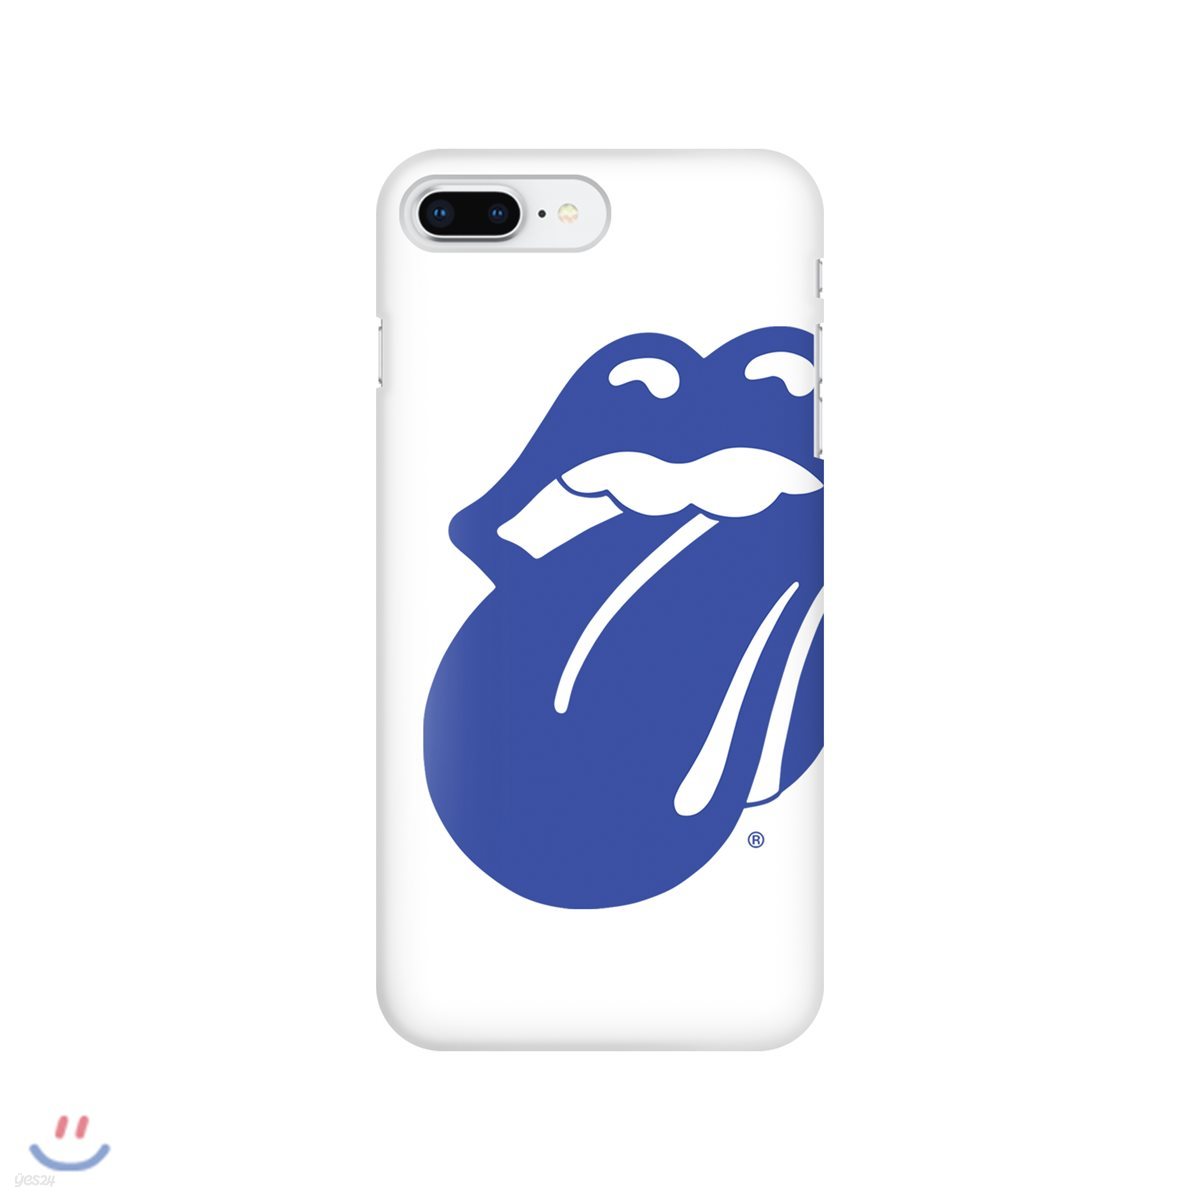 롤링스톤스 The Rolling Stones iPhone8+ Case 아이폰8 플러스 케이스 [Blue&Lonesome White]